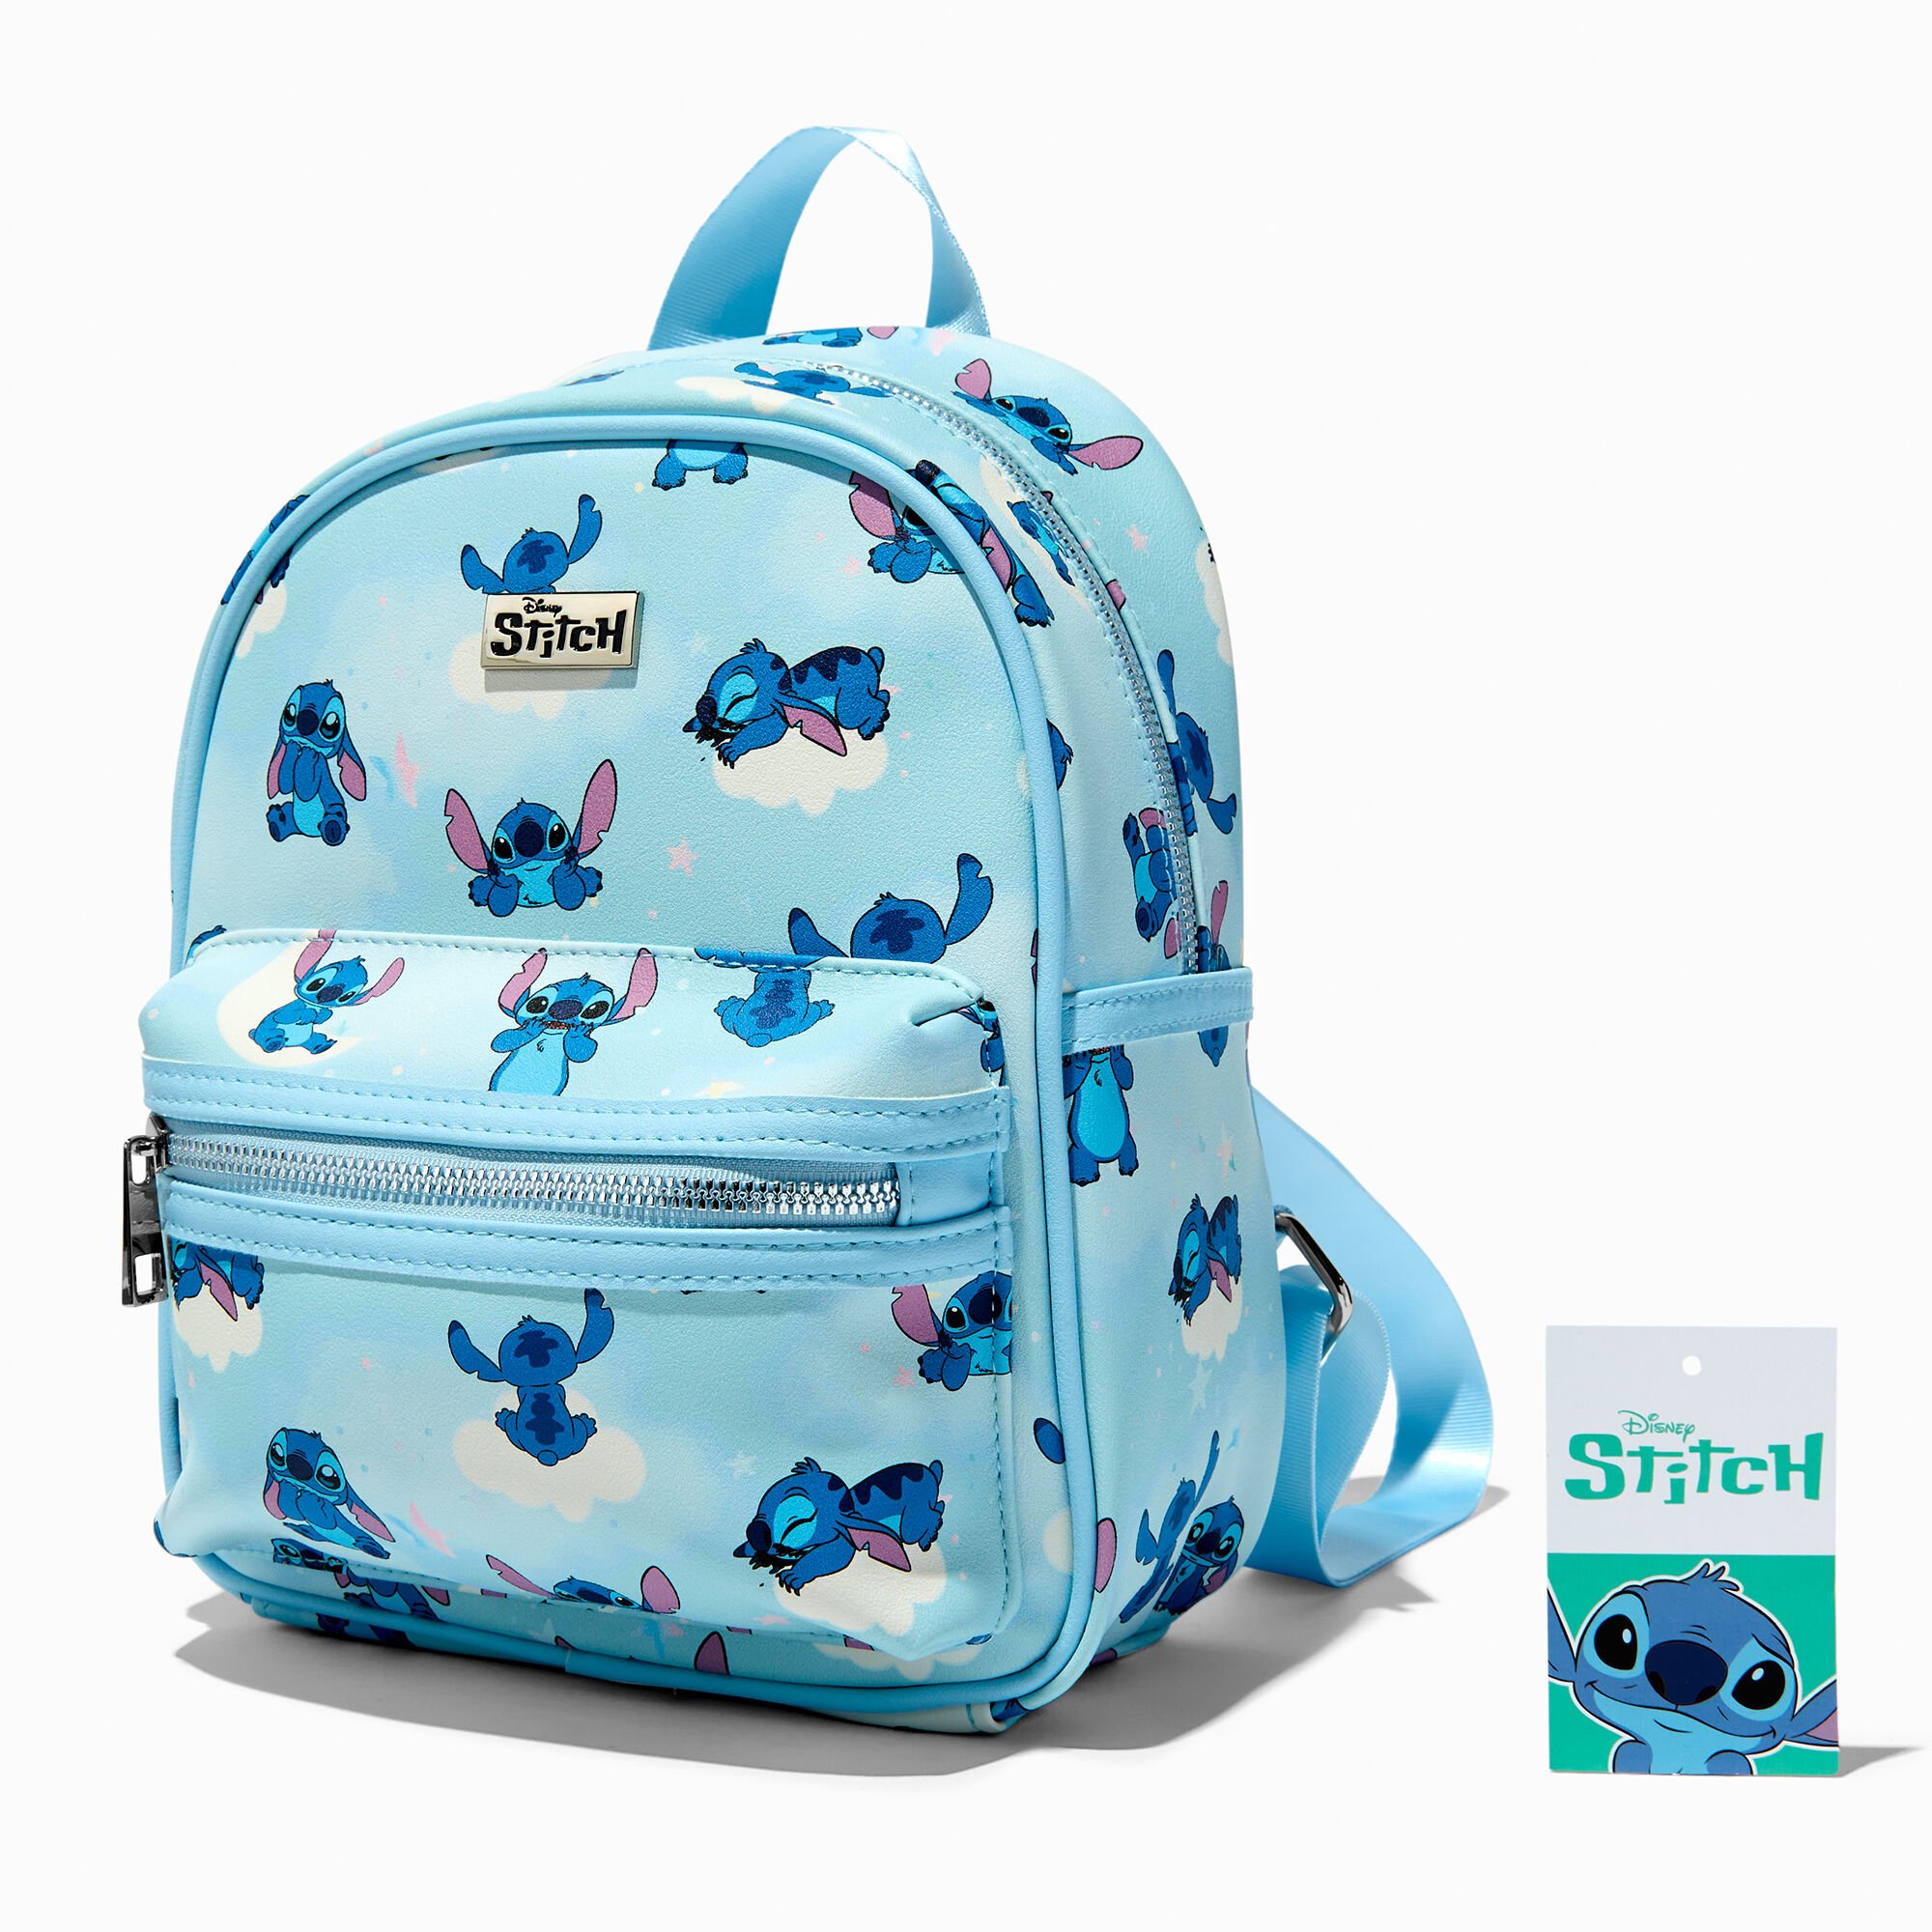 claire's disney stitch sleepy stitch backpack